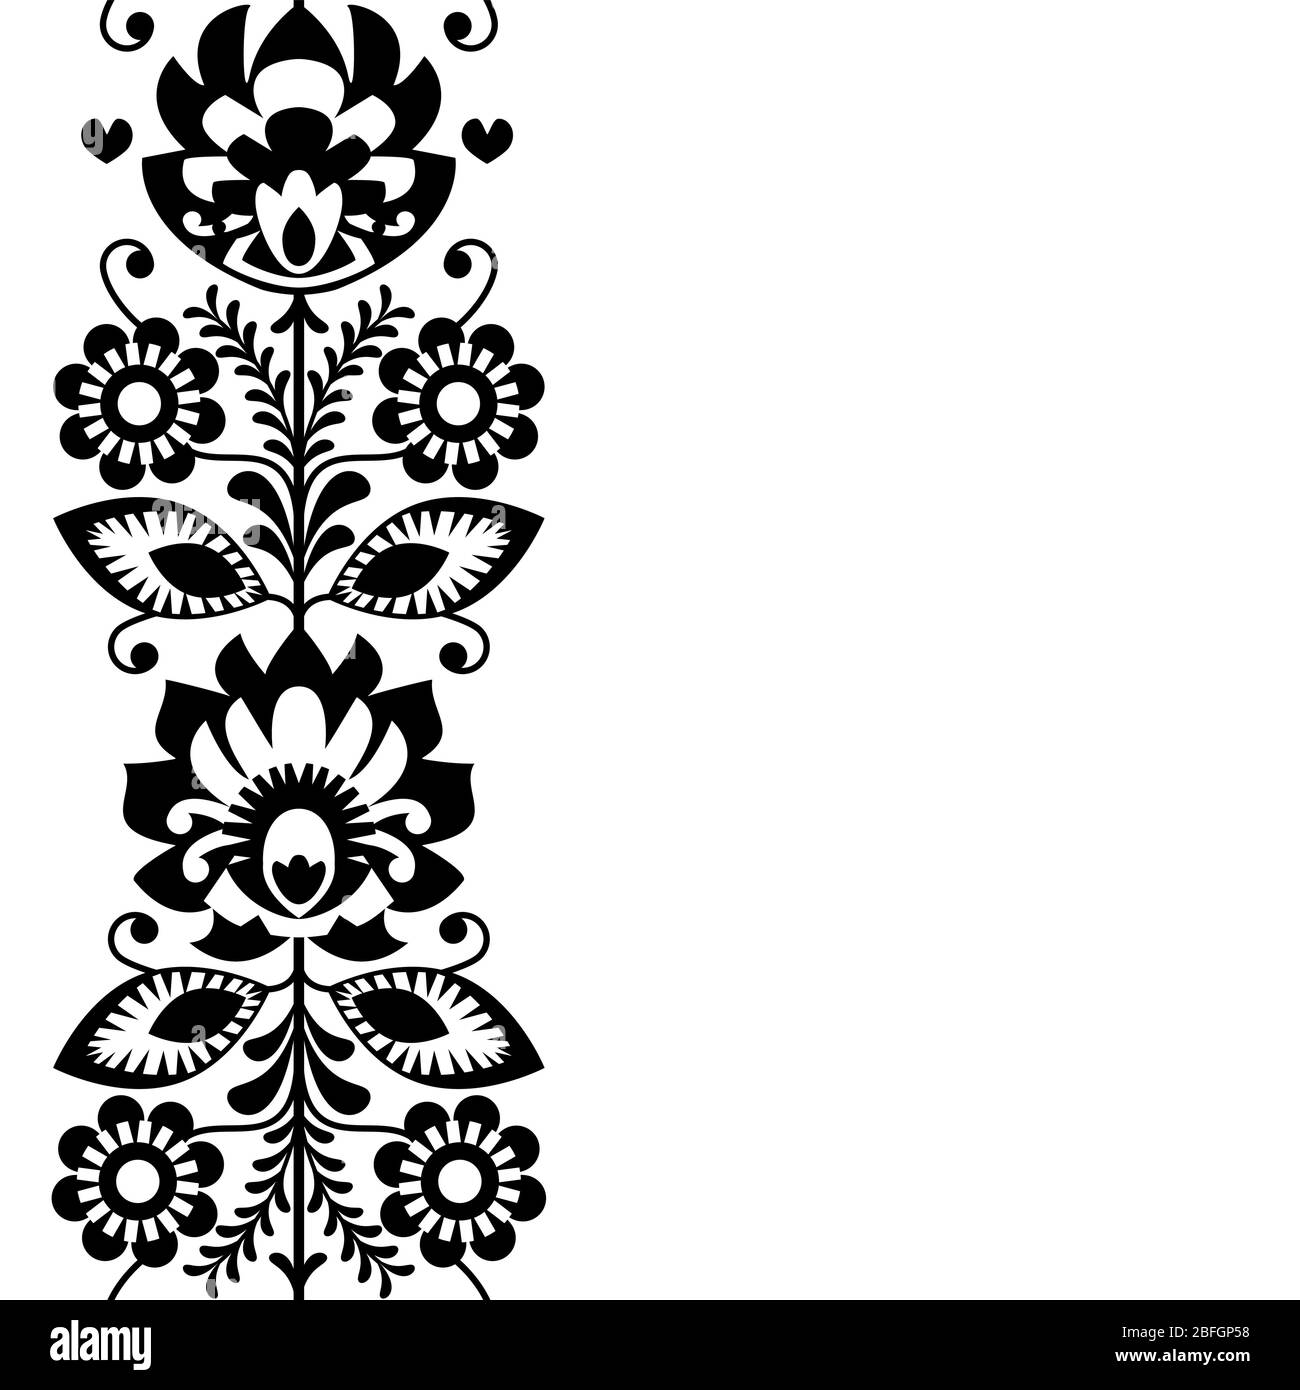 Volkskunst Design Form Polen, Vektor-Grußkarte oder Einladung - Polnische traditionelle Muster mit Blumen - Wycinanki Lowickie Stock Vektor